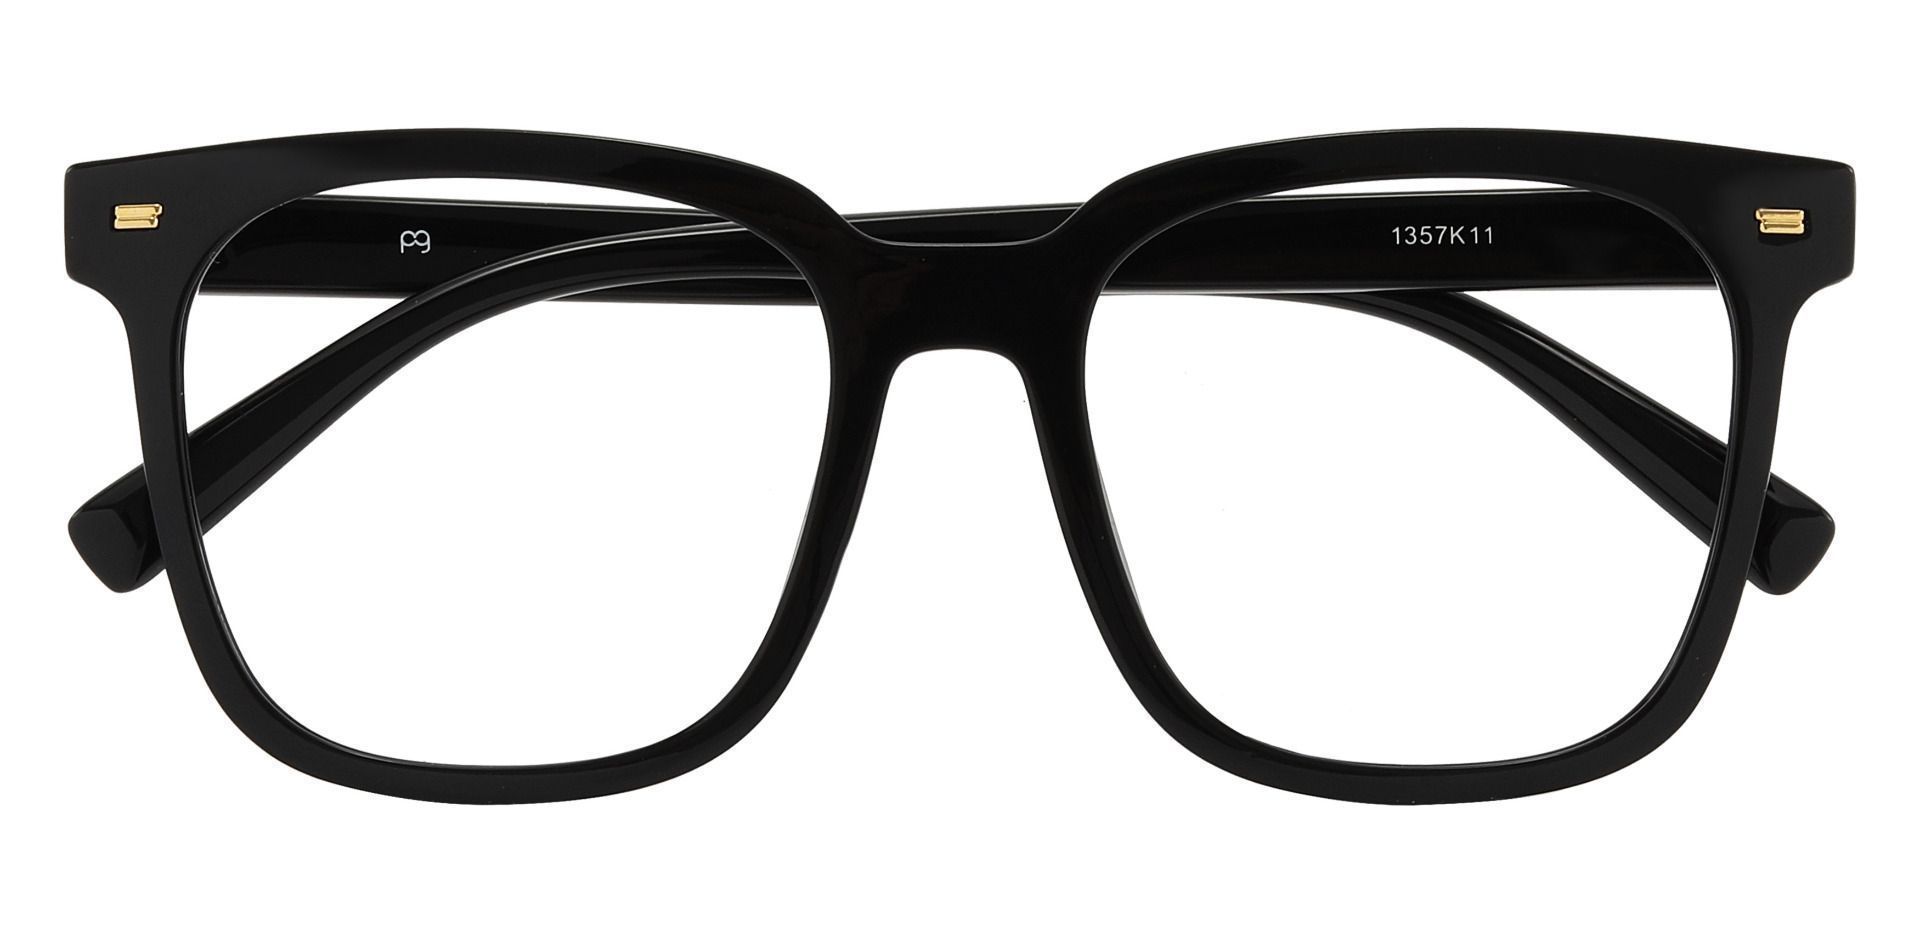 Charlie Oversized Prescription Glasses - Black, Men's Eyeglasses